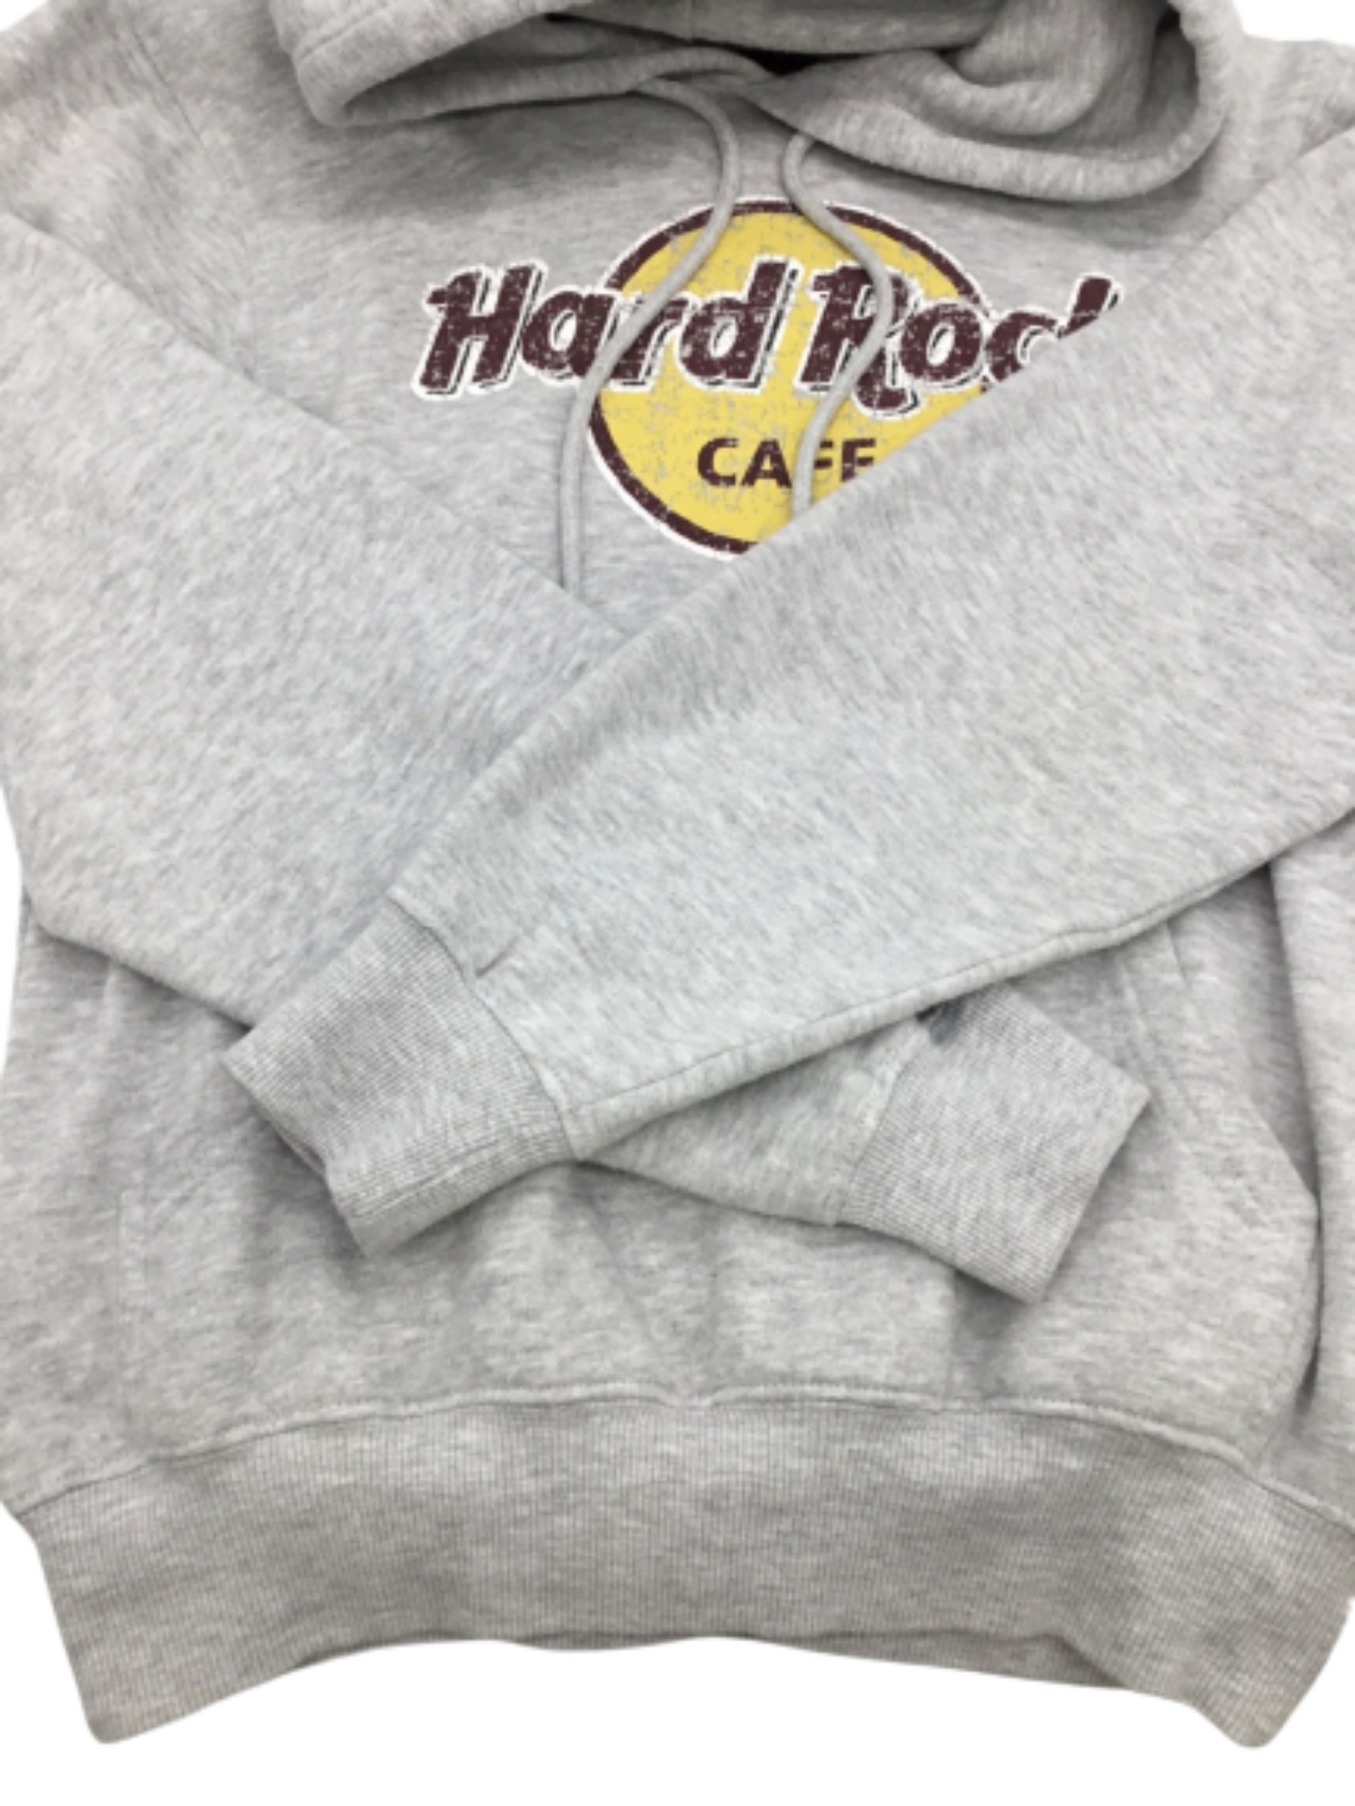 ハードロックカフェ HARD ROCK CAFE BERLIN スウェットプルオーバーパーカー メンズS /eaa375788